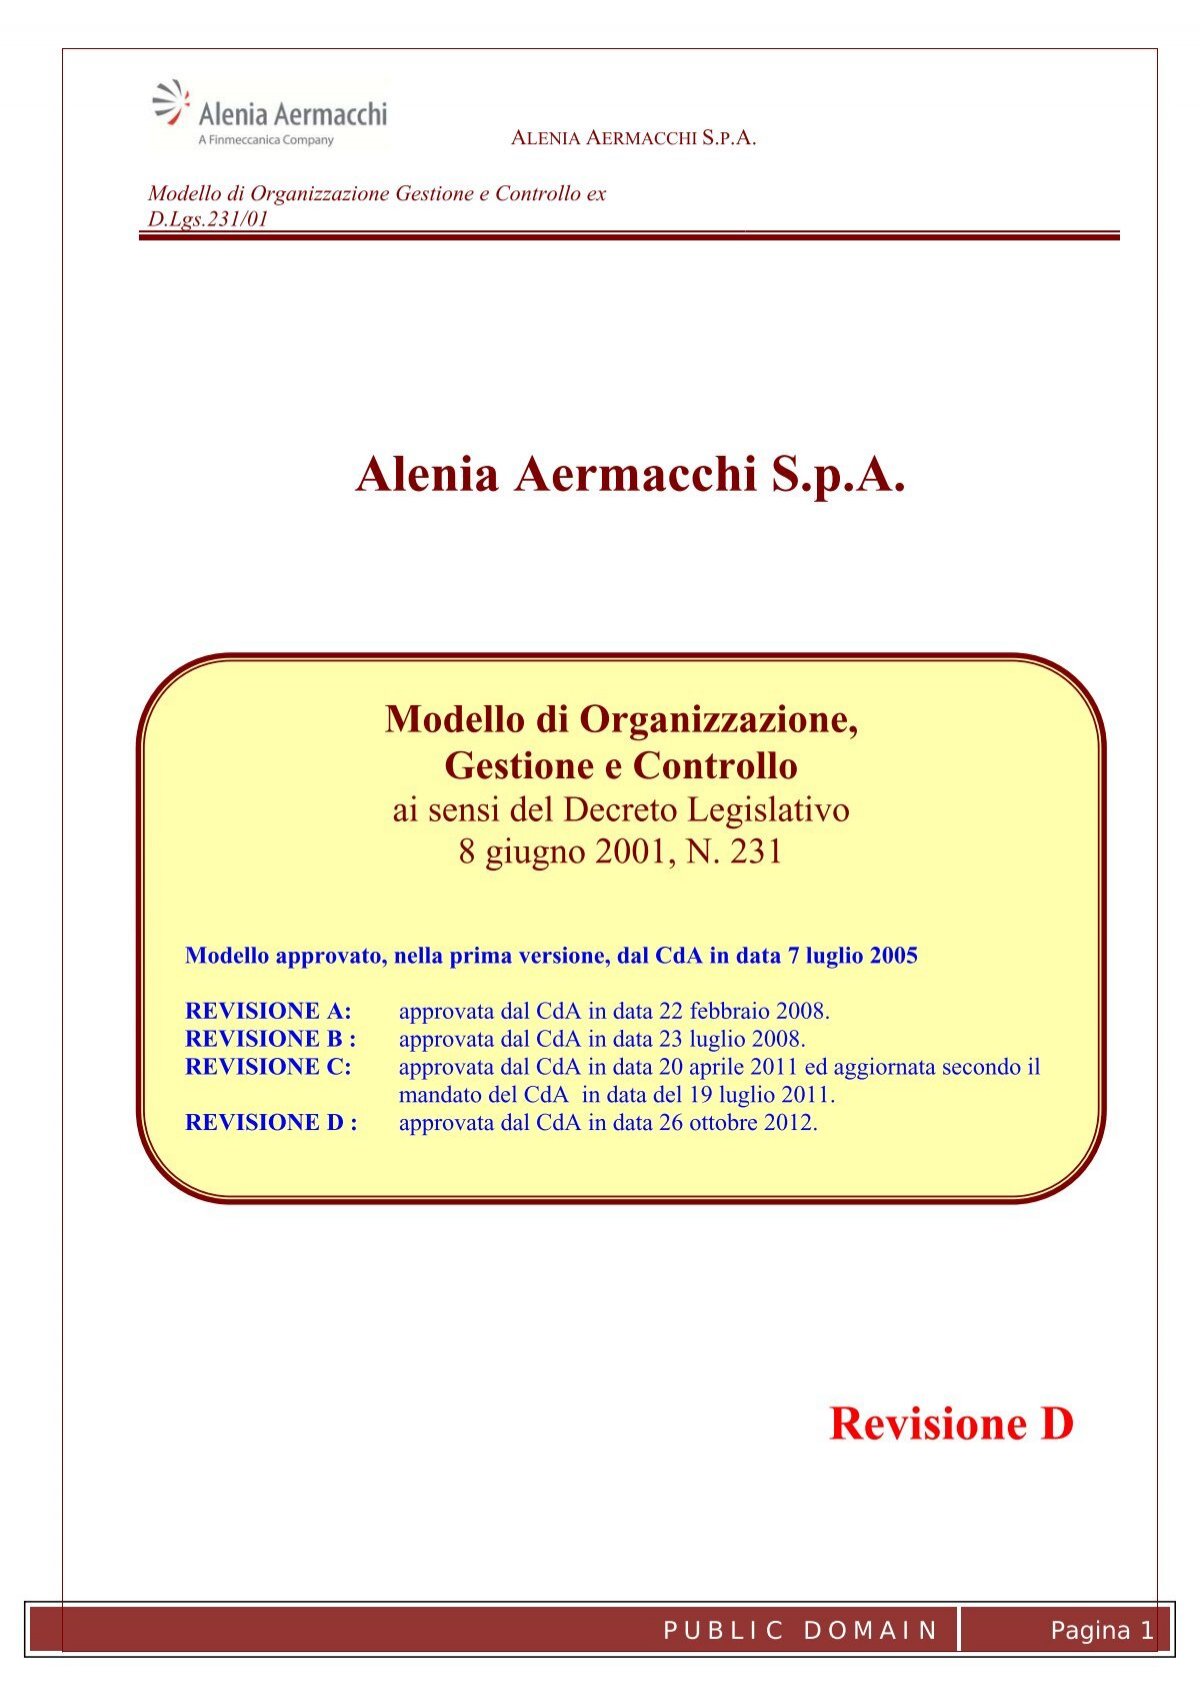 Modello Organizzativo - Alenia Aermacchi